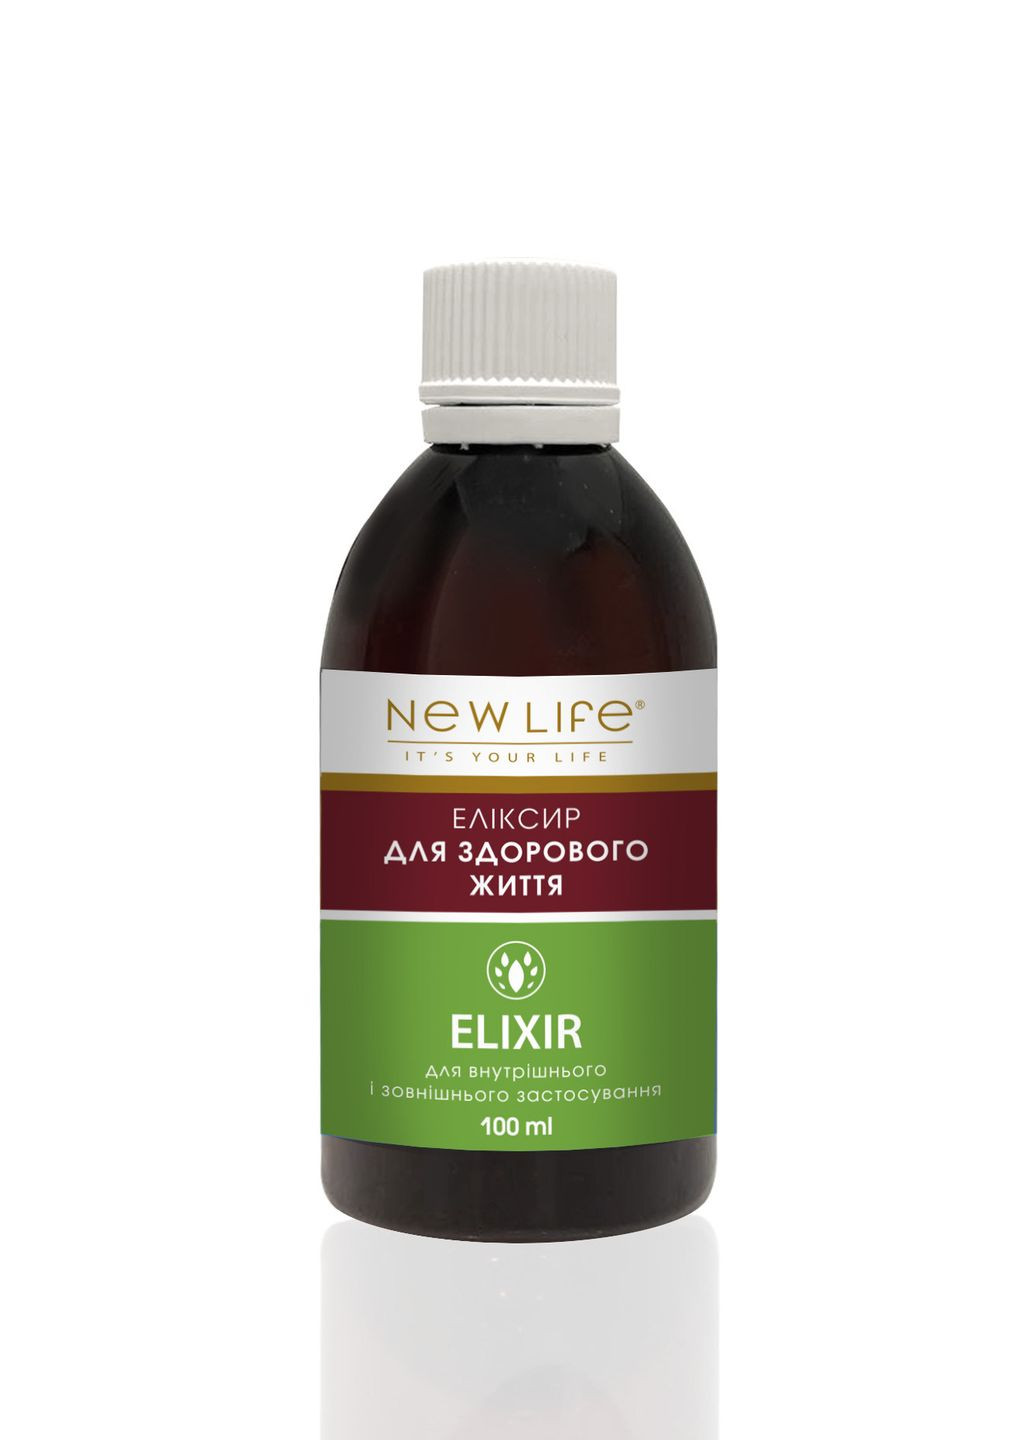 Эликсир для здоровой жизни - антиоксидант, повышает иммунитет, против новообразований, 100 ml New LIFE (266700787)